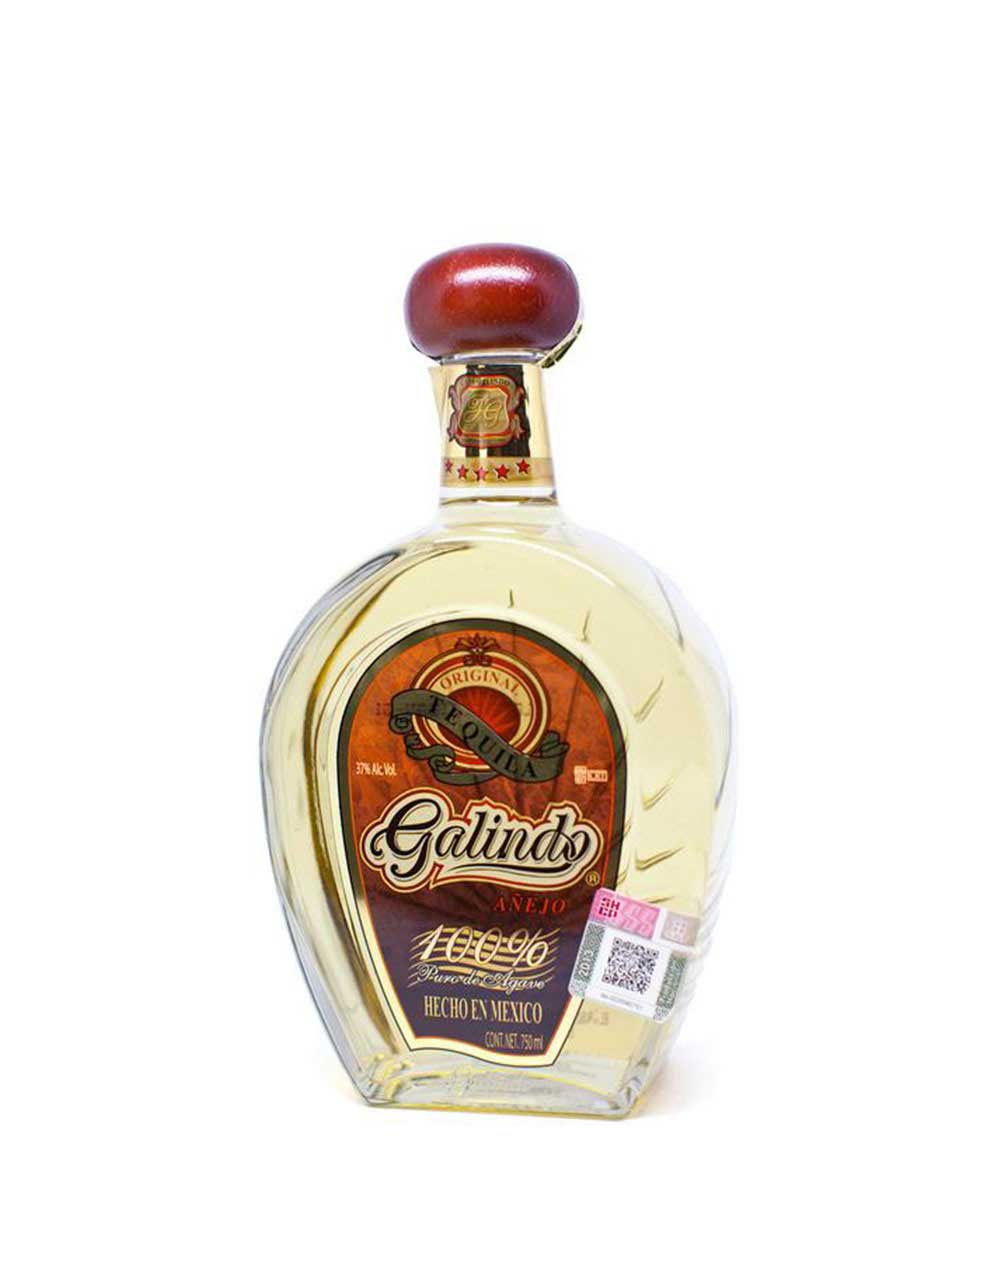 Cobalto Organic Reposado Tequila